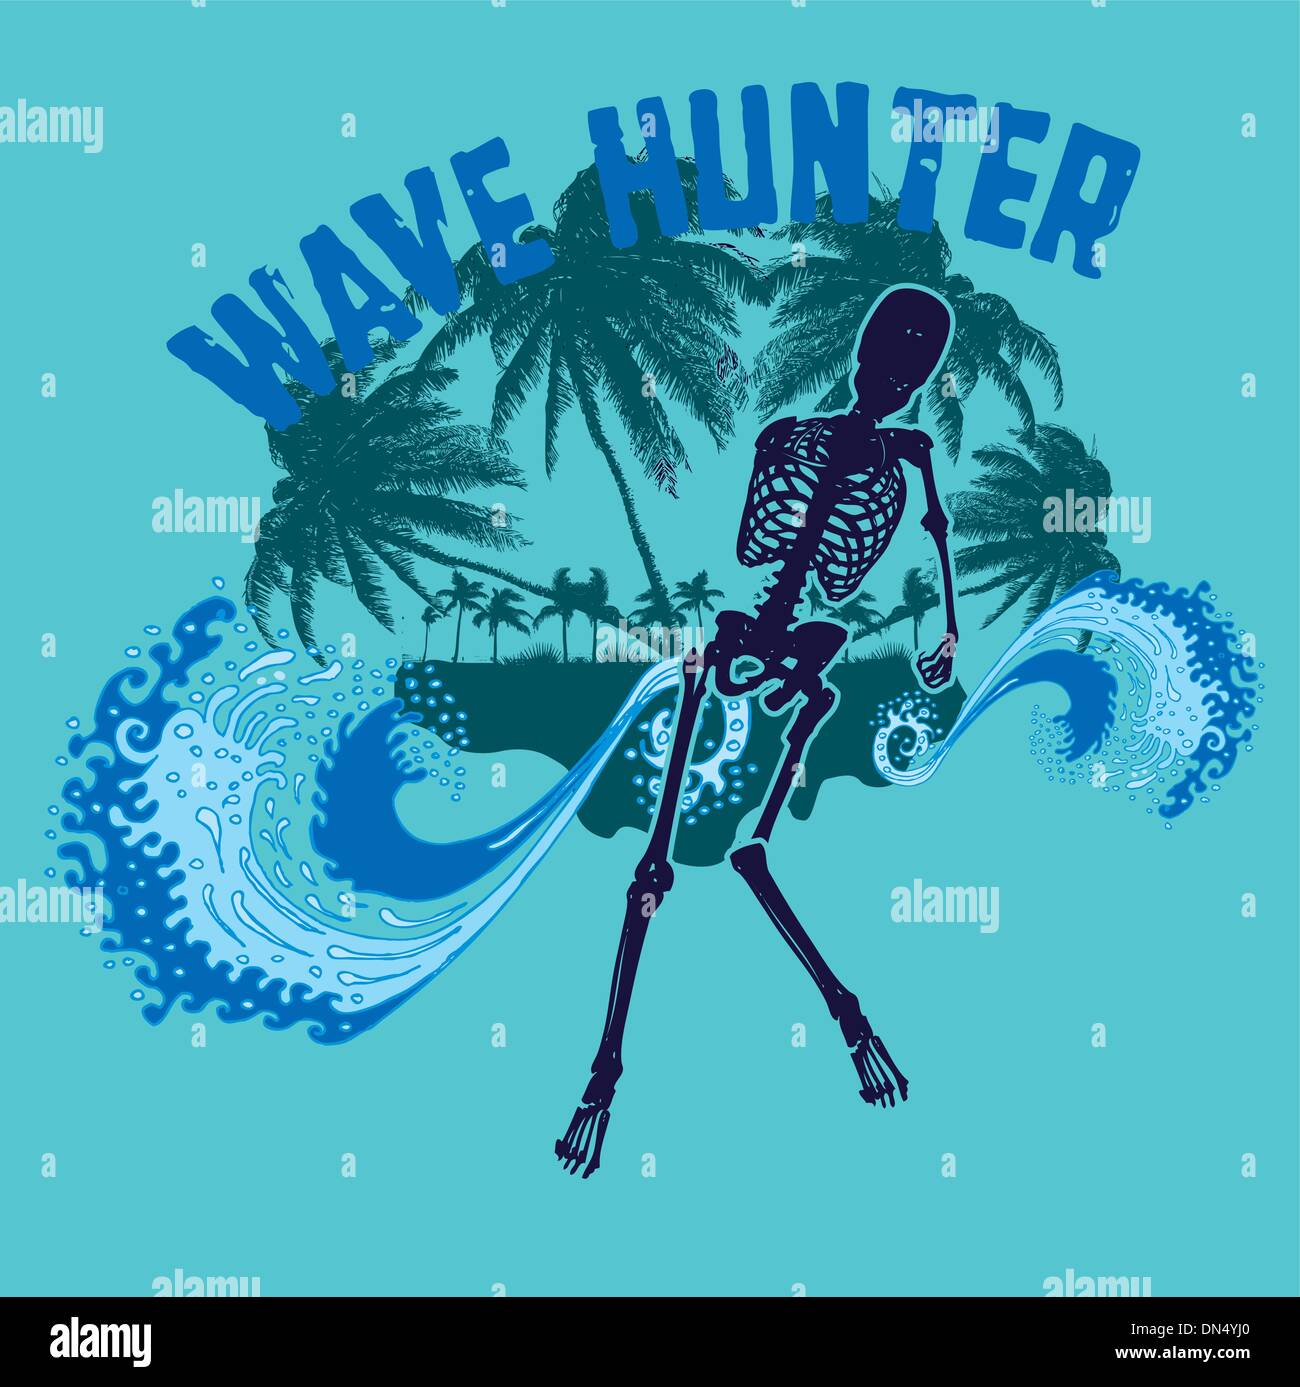 palm beach skeleton surfer vector art Stock Vector